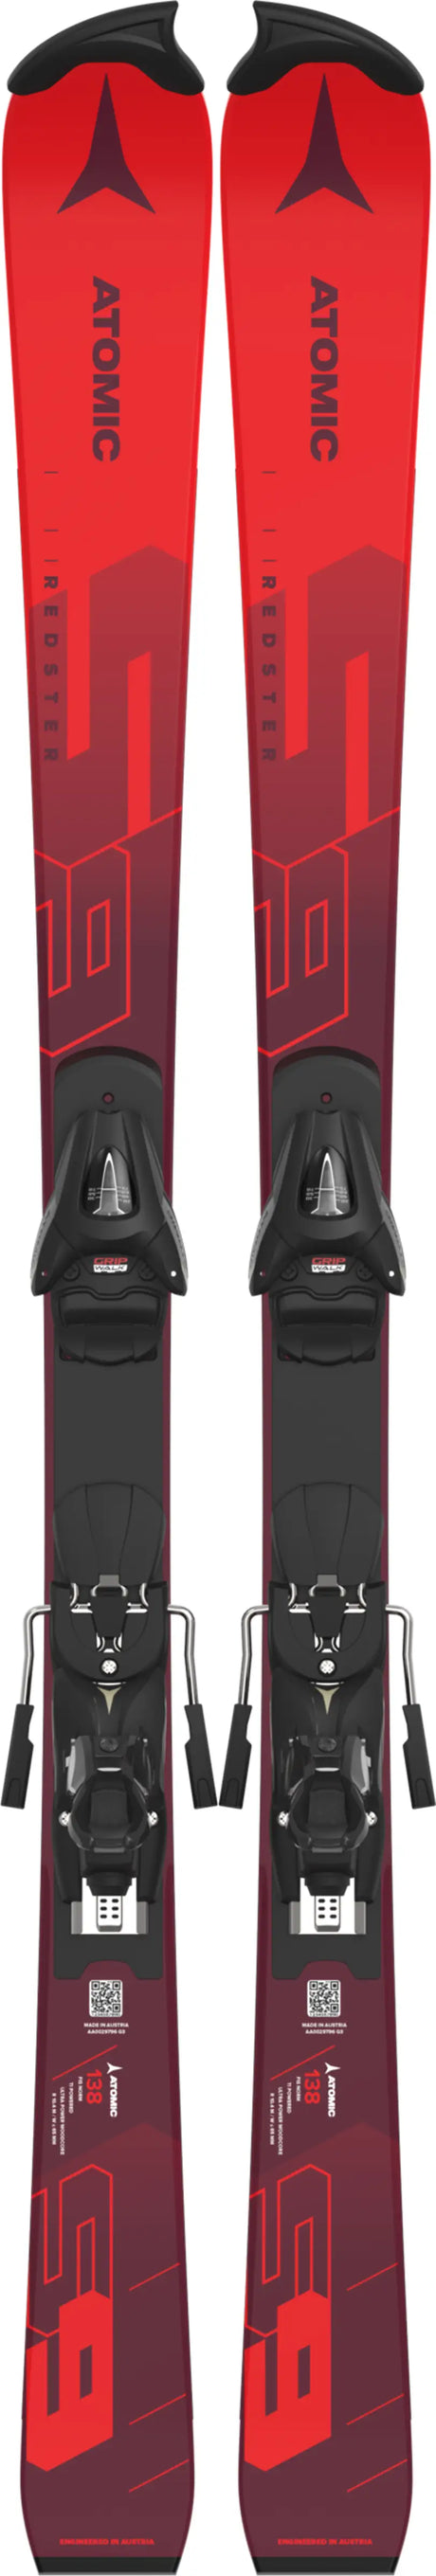 Skis de course S9 FIS J-RP2 avec fixation Colt 7 23/24 (DRAFT)